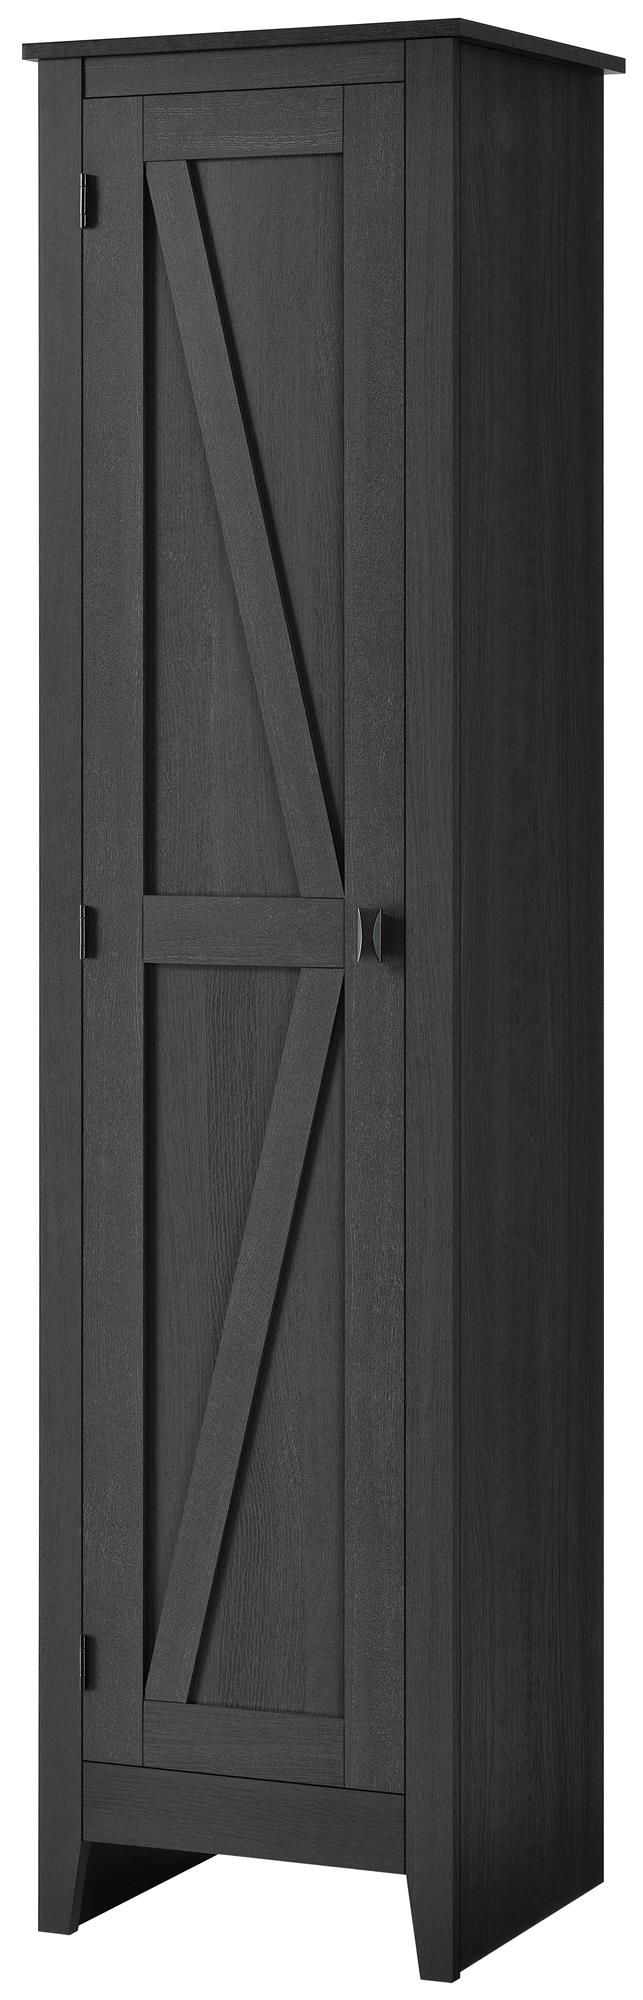 Farmington 18 inch wide cabinet for rustic interiors -  Black Oak